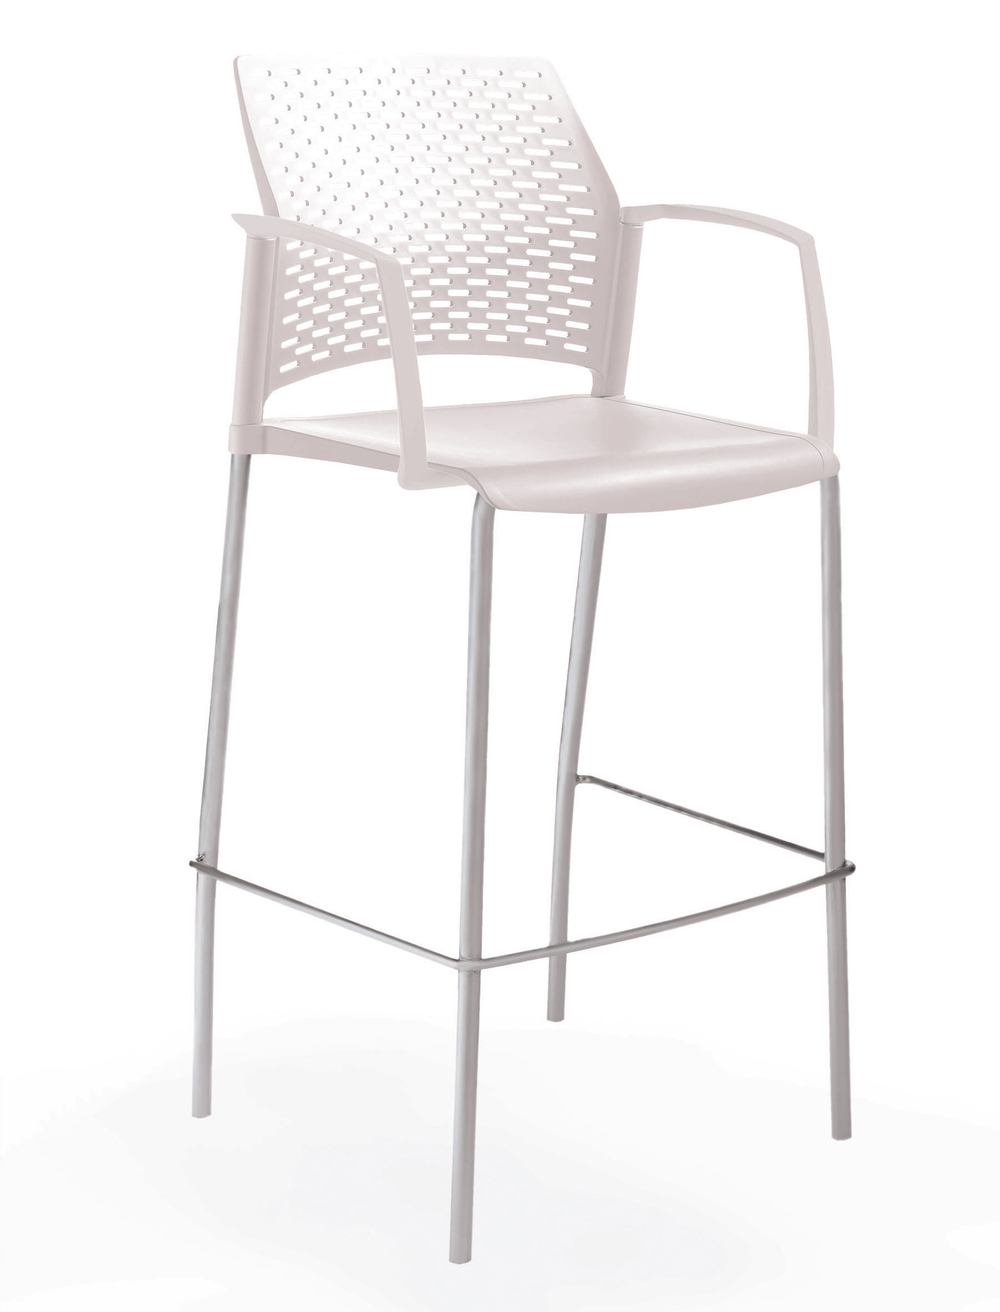 стул Rewind барный, каркас серый, пластик белый, с закрытыми подлокотниками, без обивки